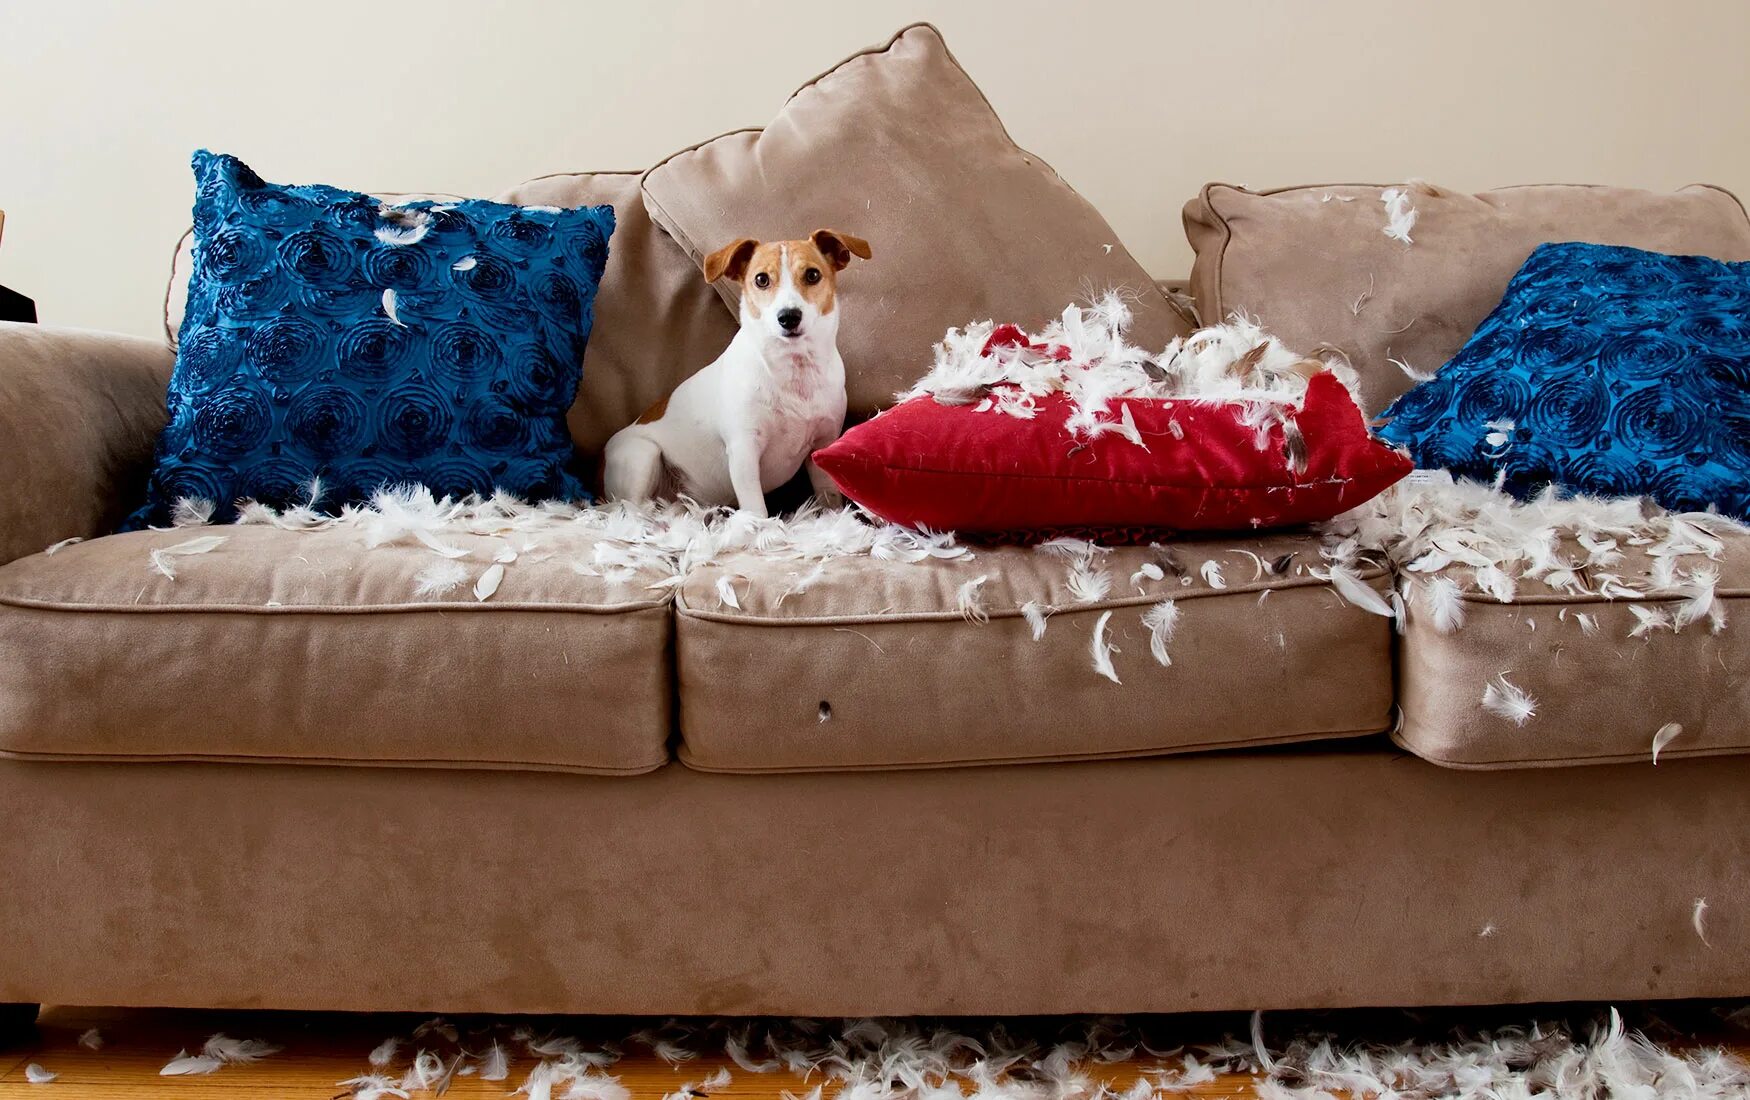 End up living. Диван для собаки. Мебель мягкая для домашних питомцев. Рваный диван. Собака на рваном диване.